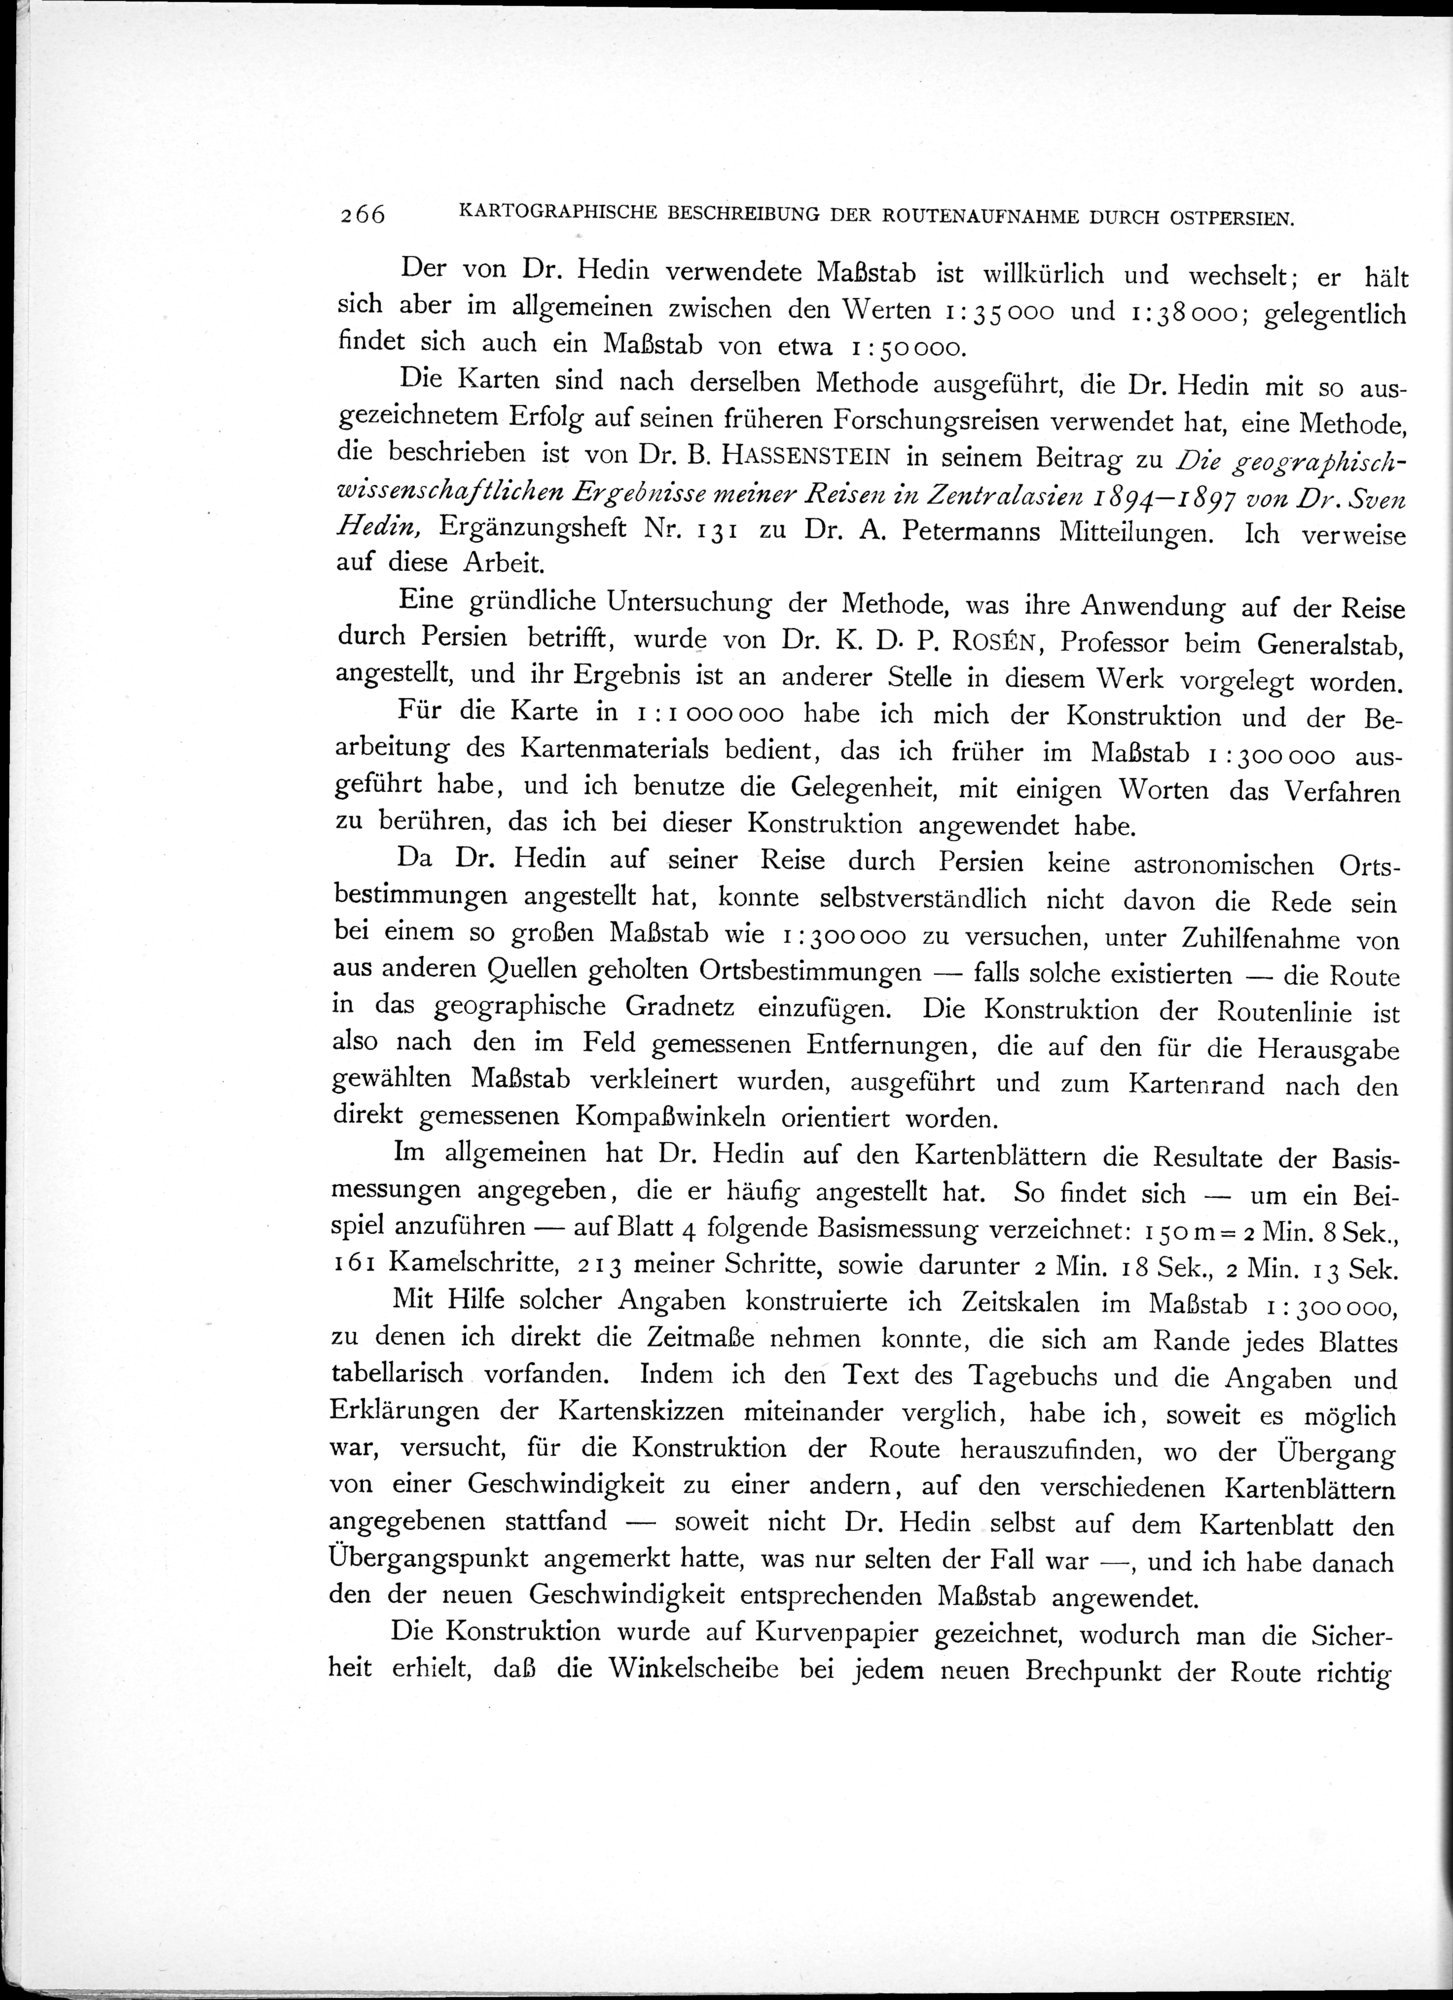 Eine Routenaufnahme durch Ostpersien : vol.2 / Page 336 (Grayscale High Resolution Image)